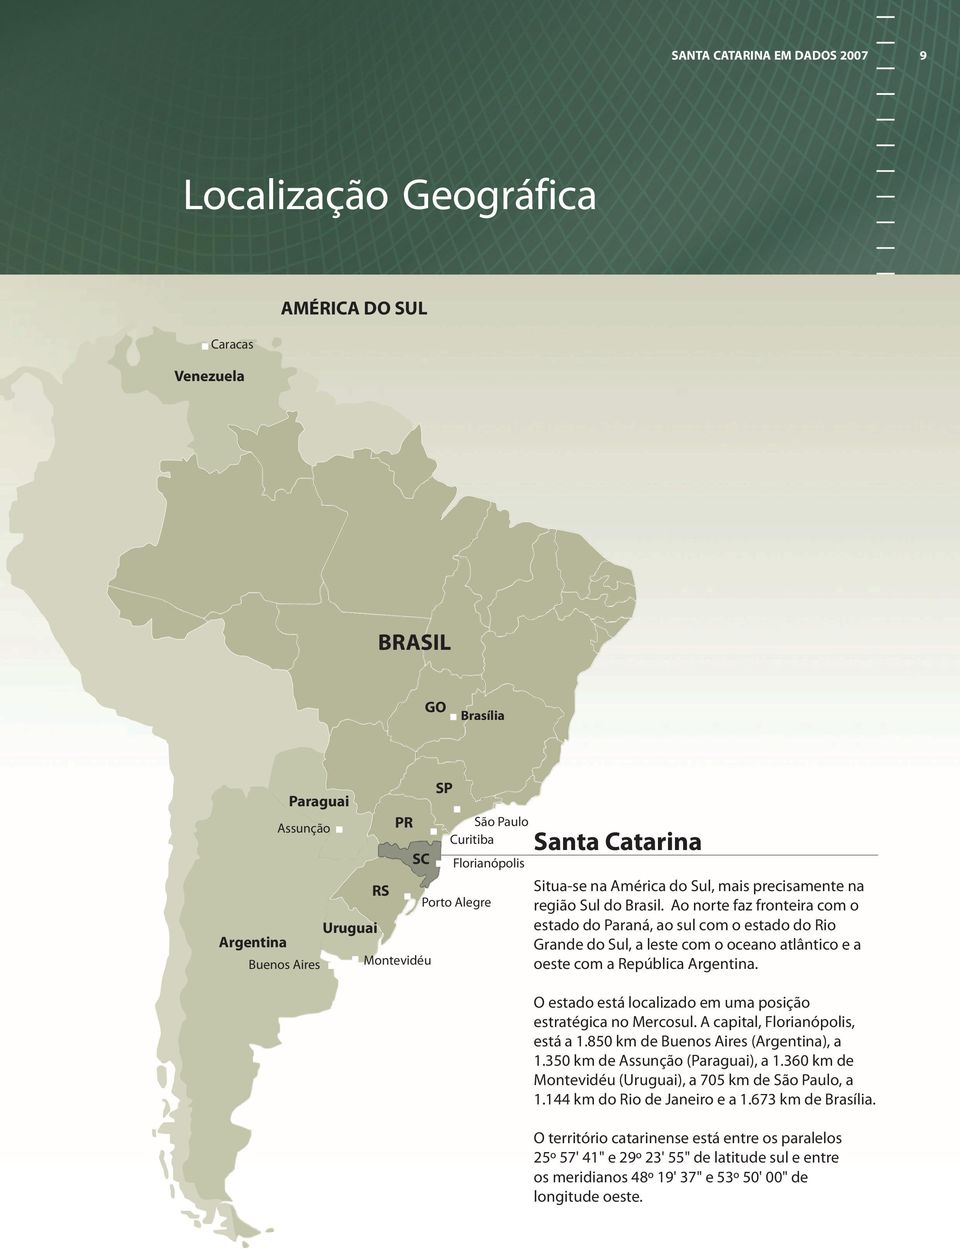 Ao norte faz fronteira com o estado do Paraná, ao sul com o estado do Rio Grande do Sul, a leste com o oceano atlântico e a oeste com a República Argentina.